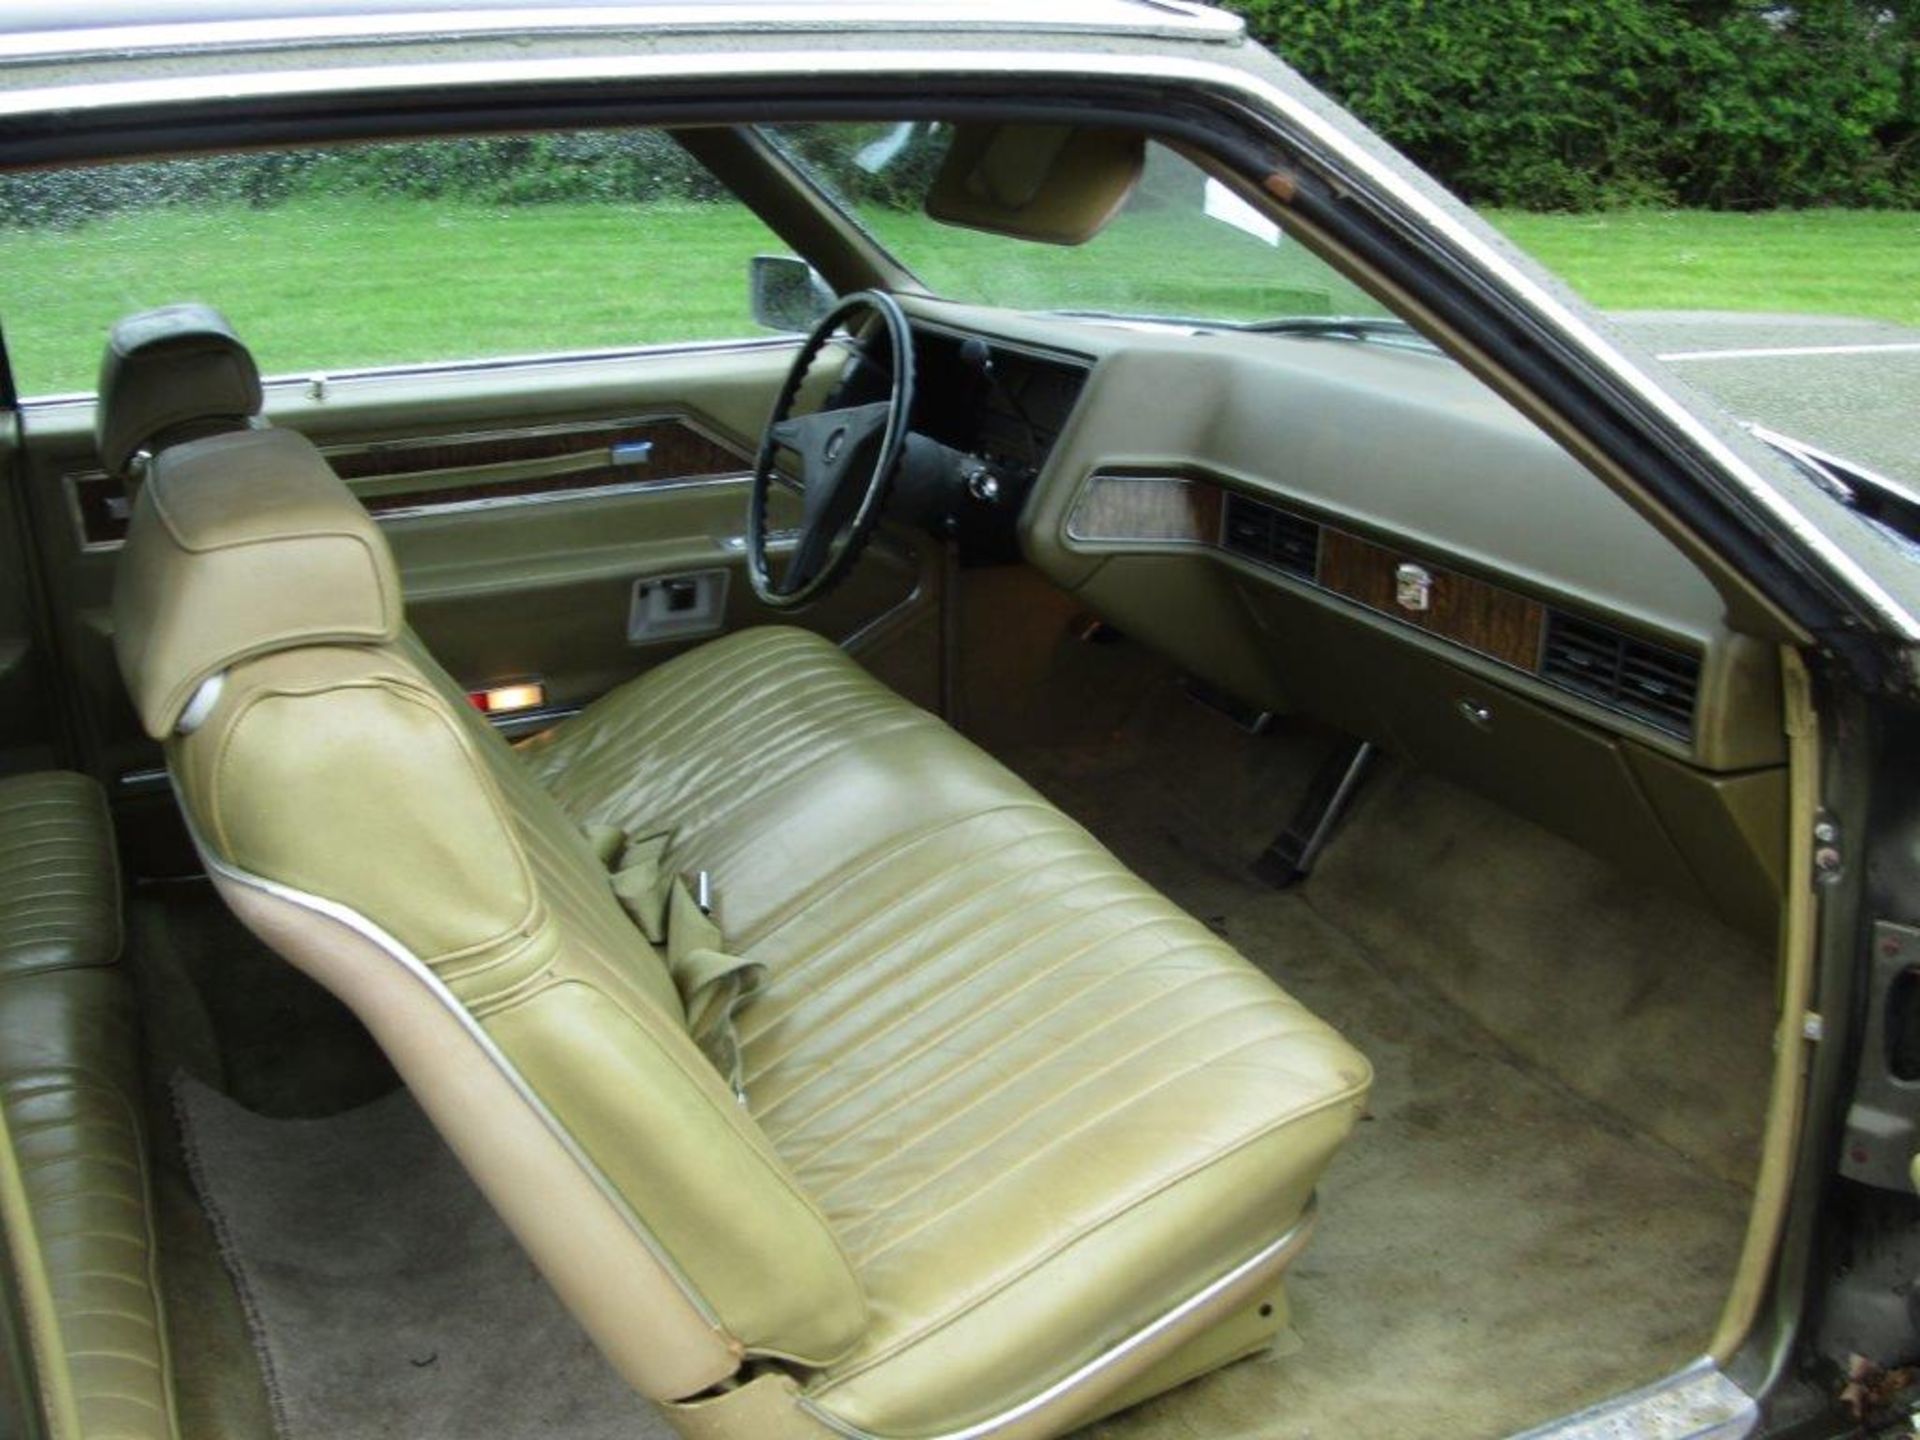 1970 Cadillac Eldorado Coupe LHD - Image 15 of 22